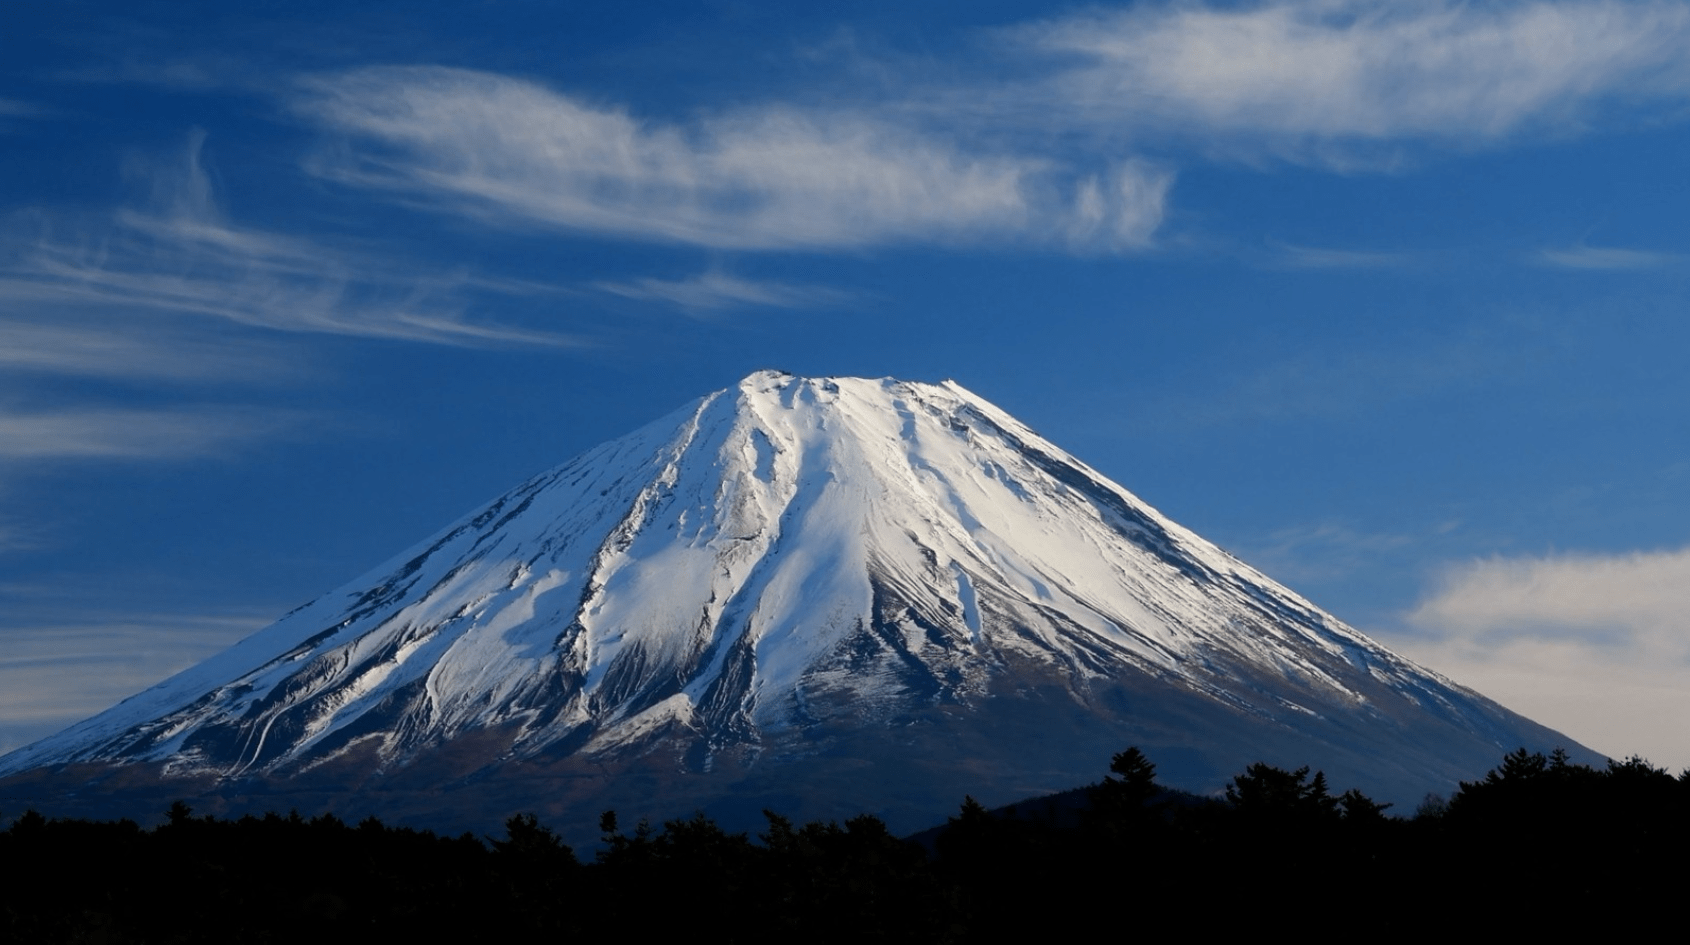 富士山和长白山图片